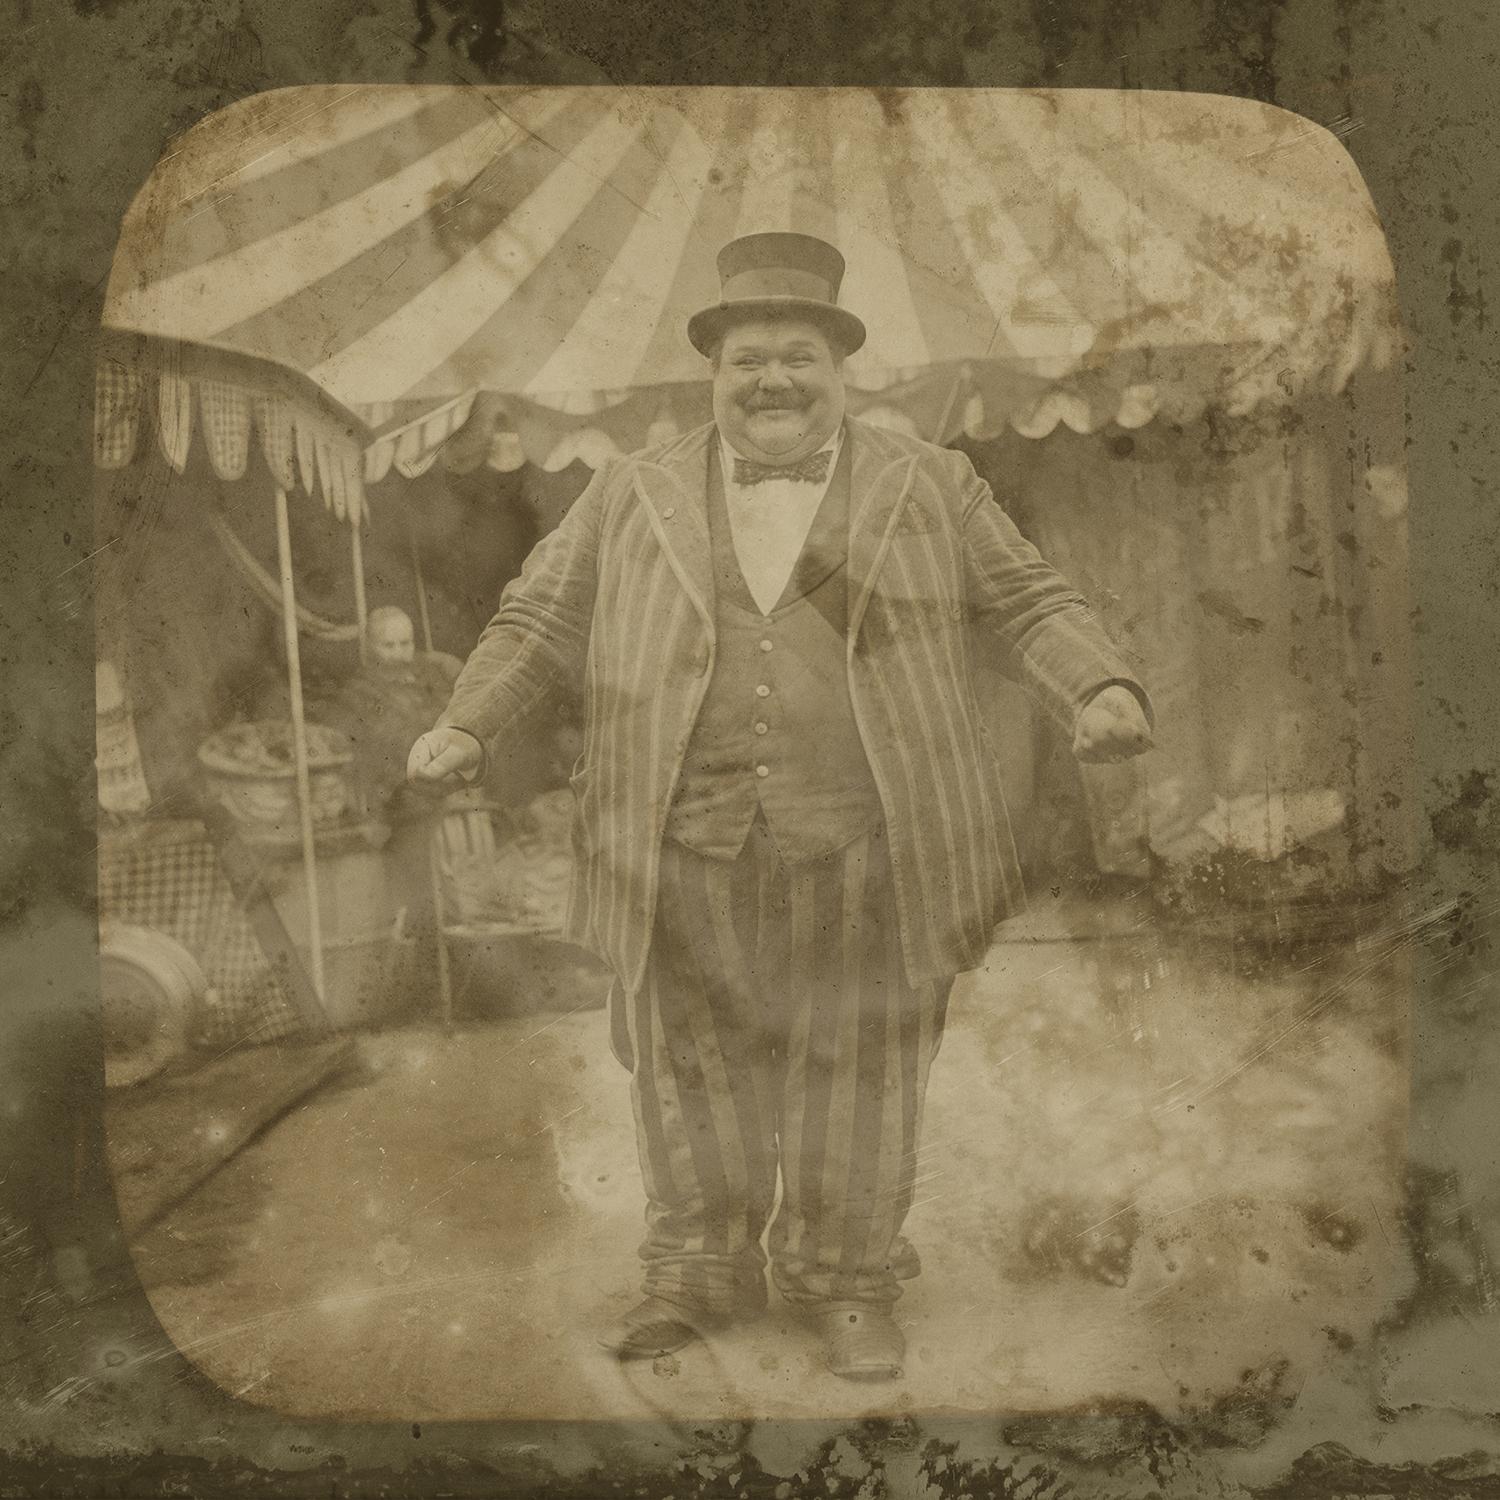 Figurative Photograph FPA Francis Pavy Artist - Circus Fatman - reproduction du daguerréotype éxotique encadrée